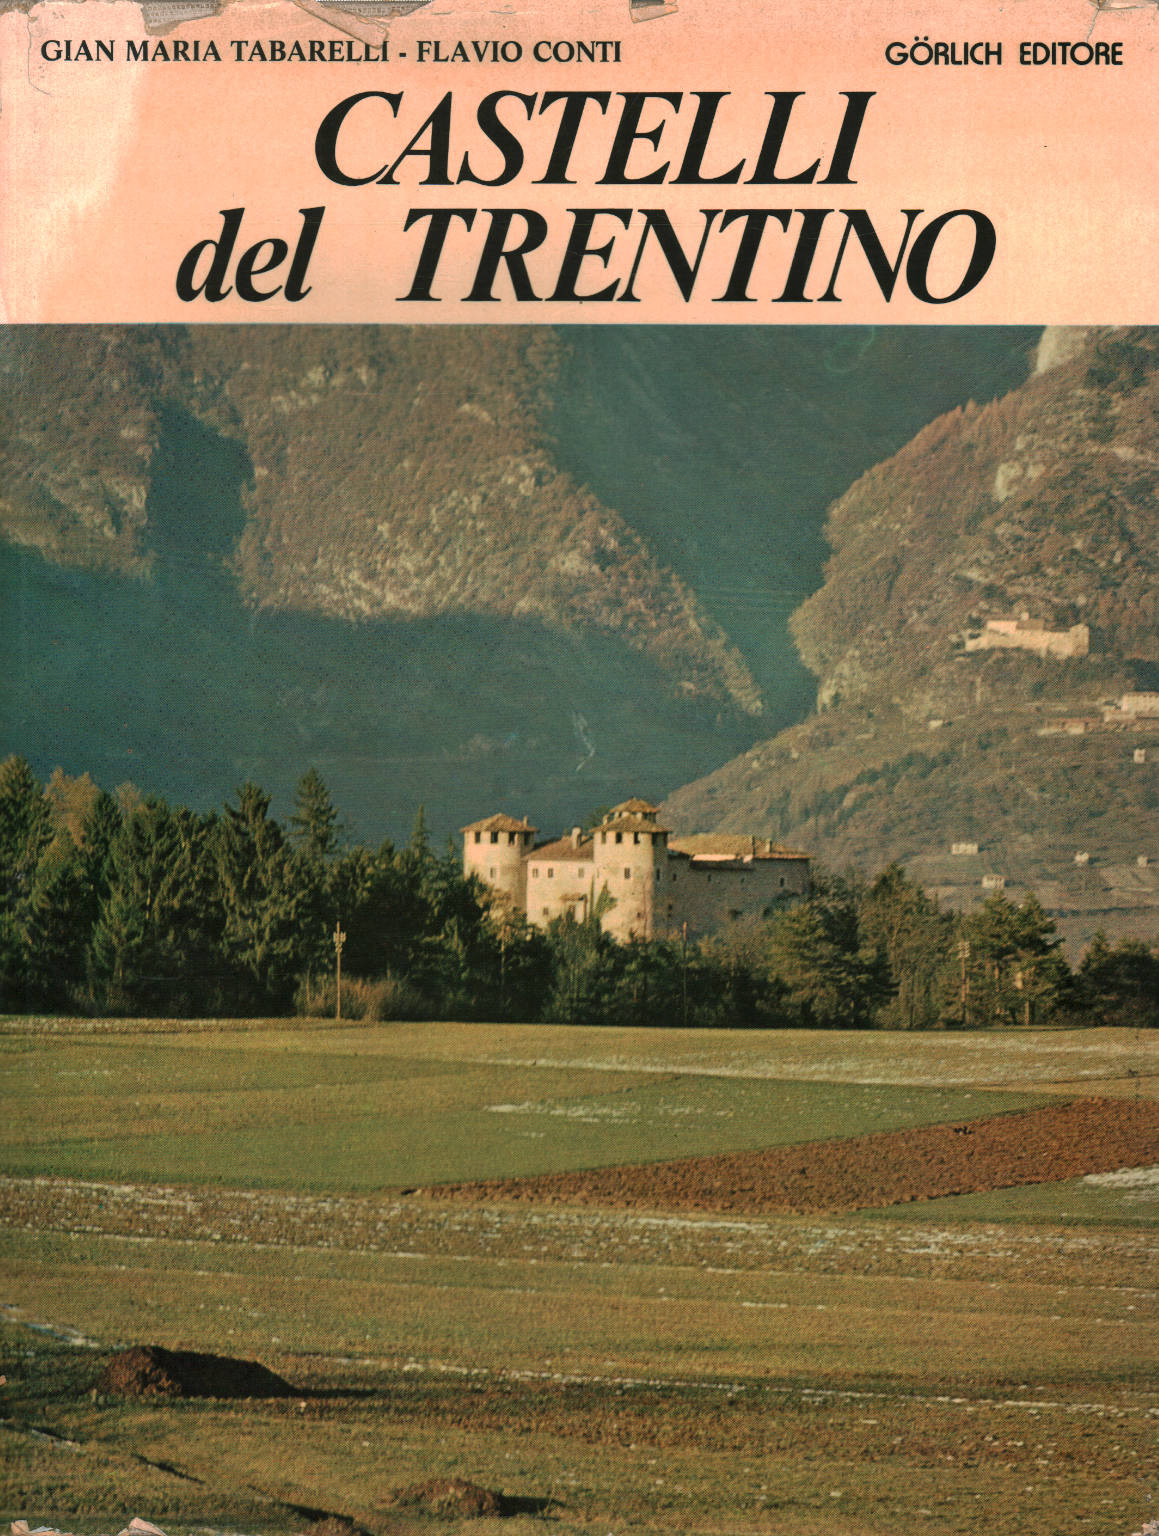 Castillos de Trentino, Gian Maria Tabarelli Flavio Conti